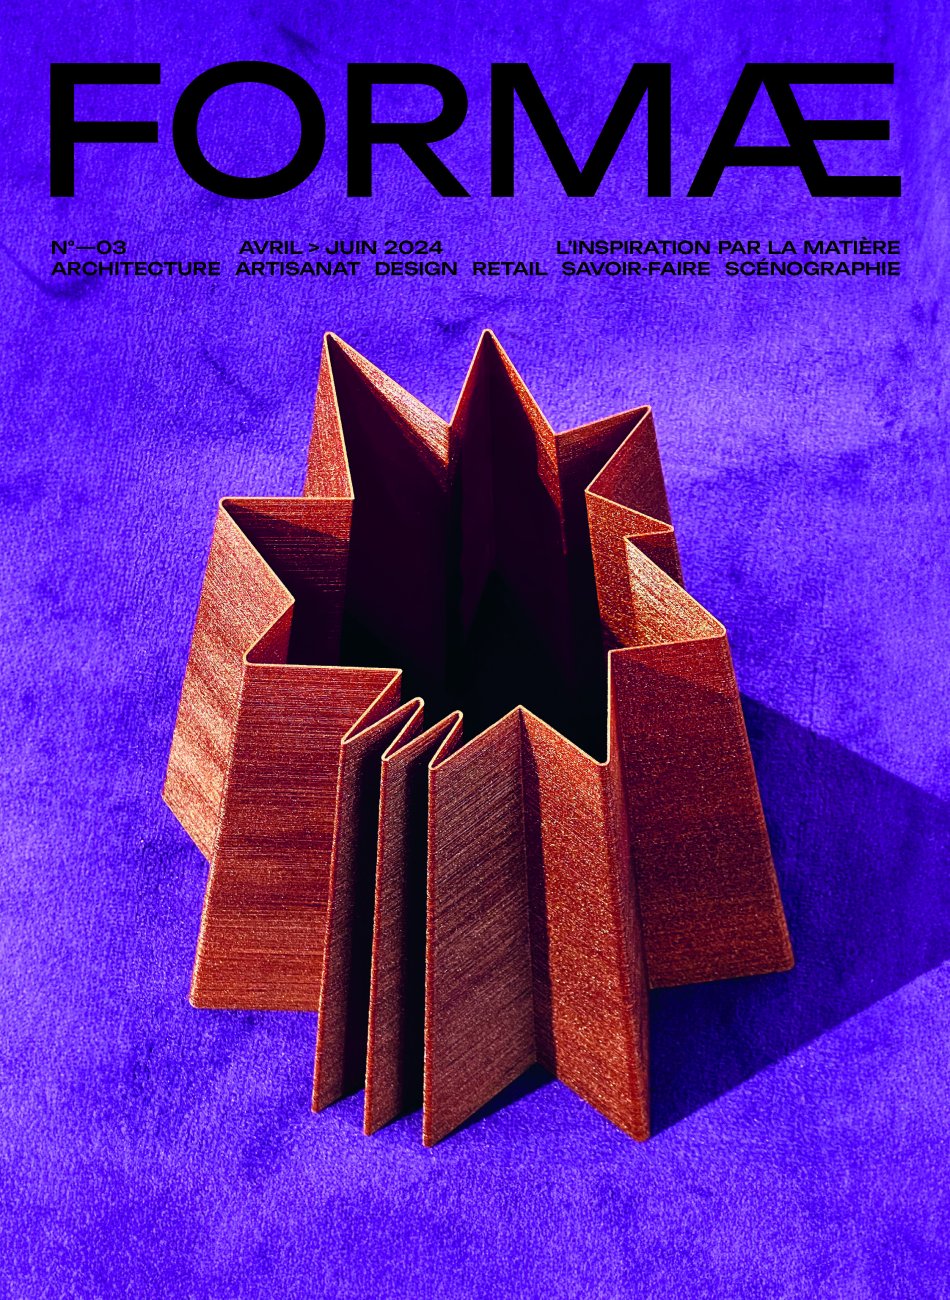 Formae / April - June 2024 / Formae